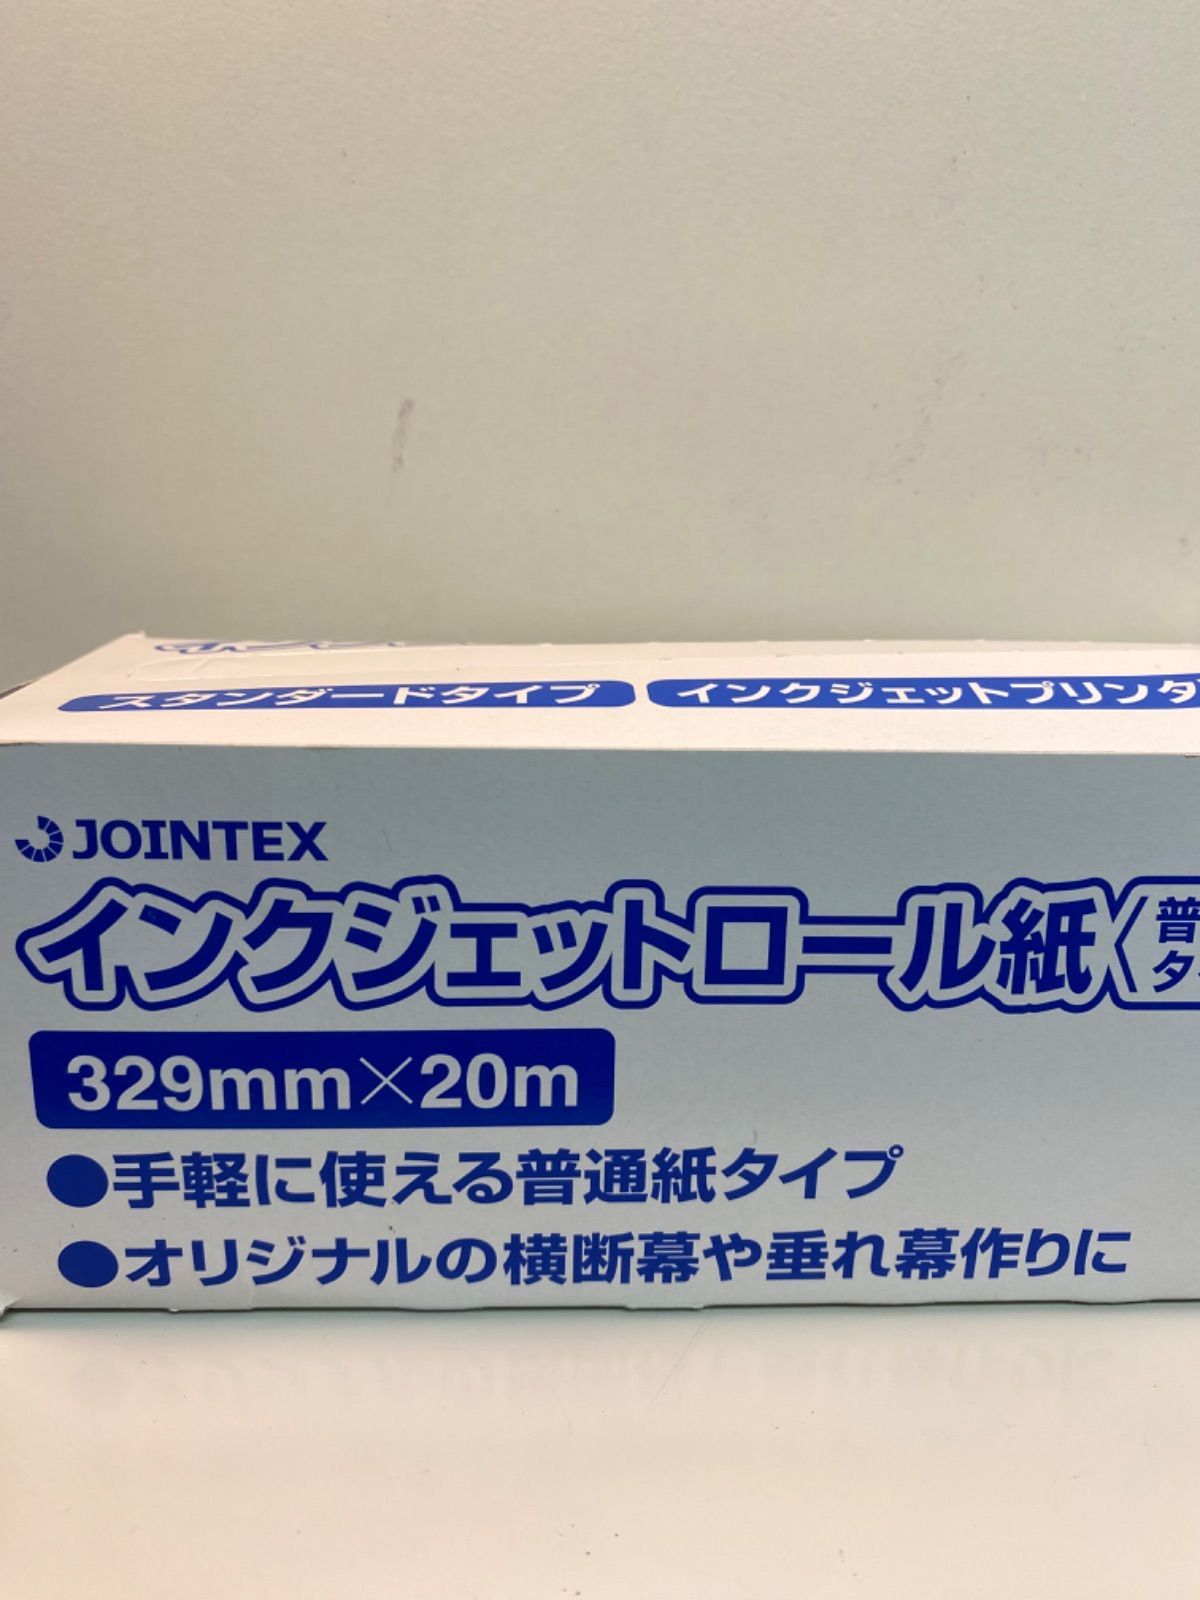 ＩＪロール紙 普通紙 A3N A056J ジョインテックス - コピー用紙・印刷用紙